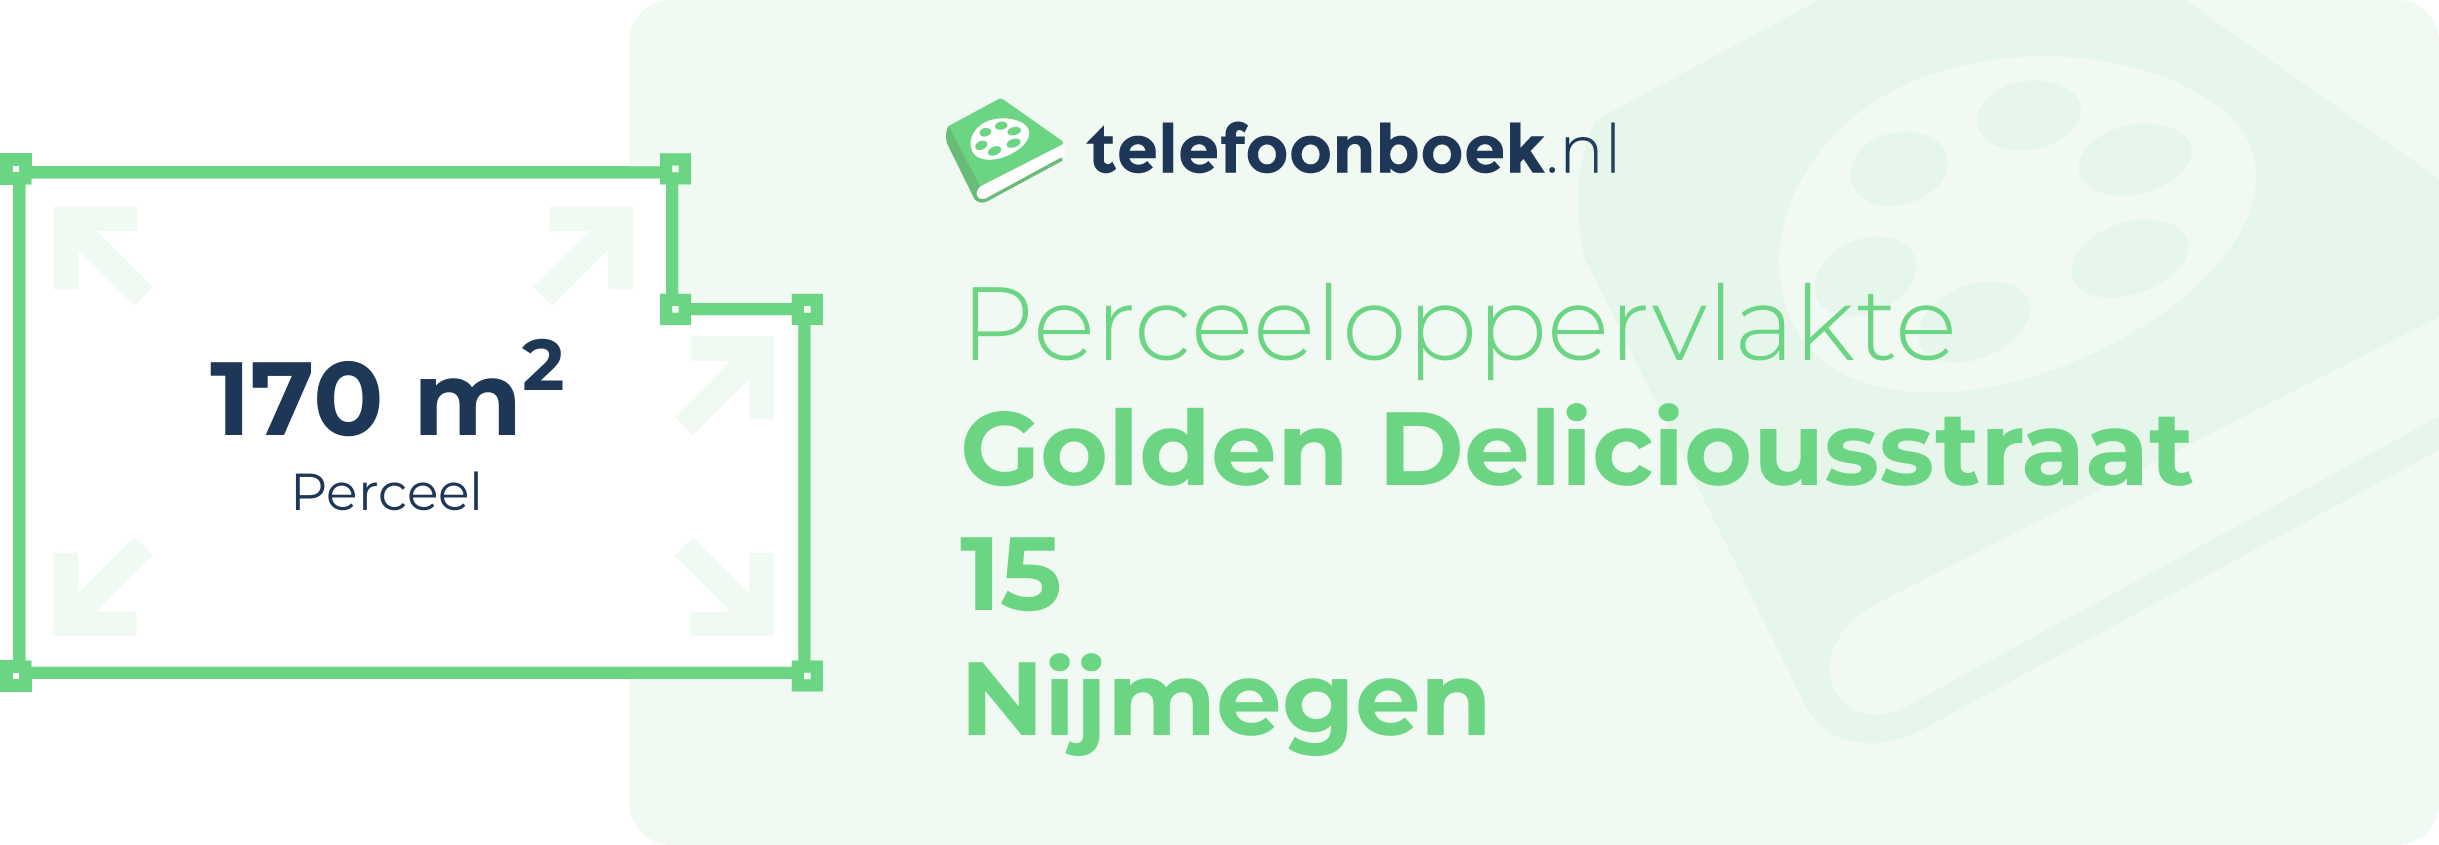 Perceeloppervlakte Golden Deliciousstraat 15 Nijmegen